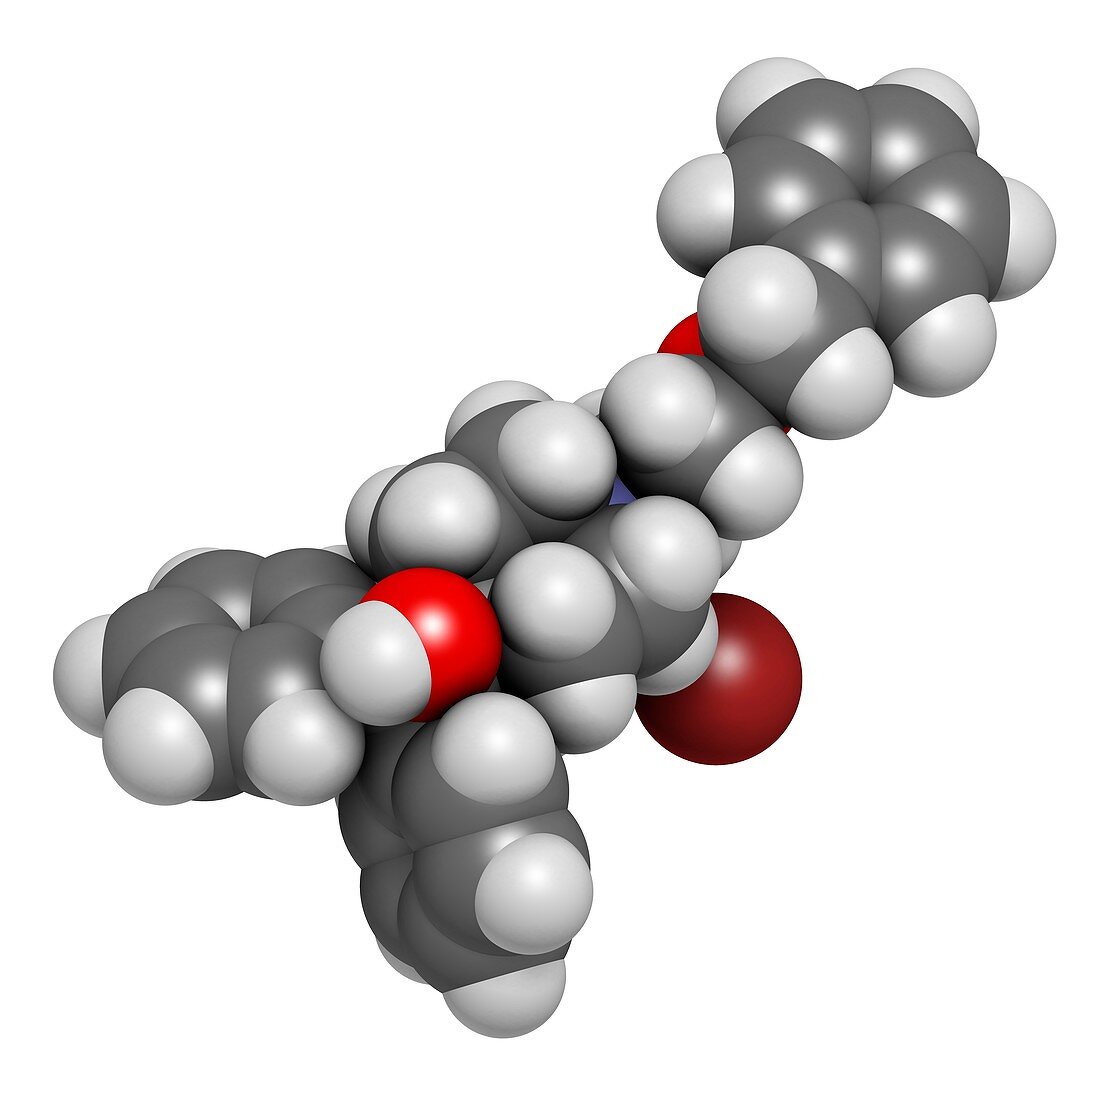 Umeclidinium bromide COPD drug molecule